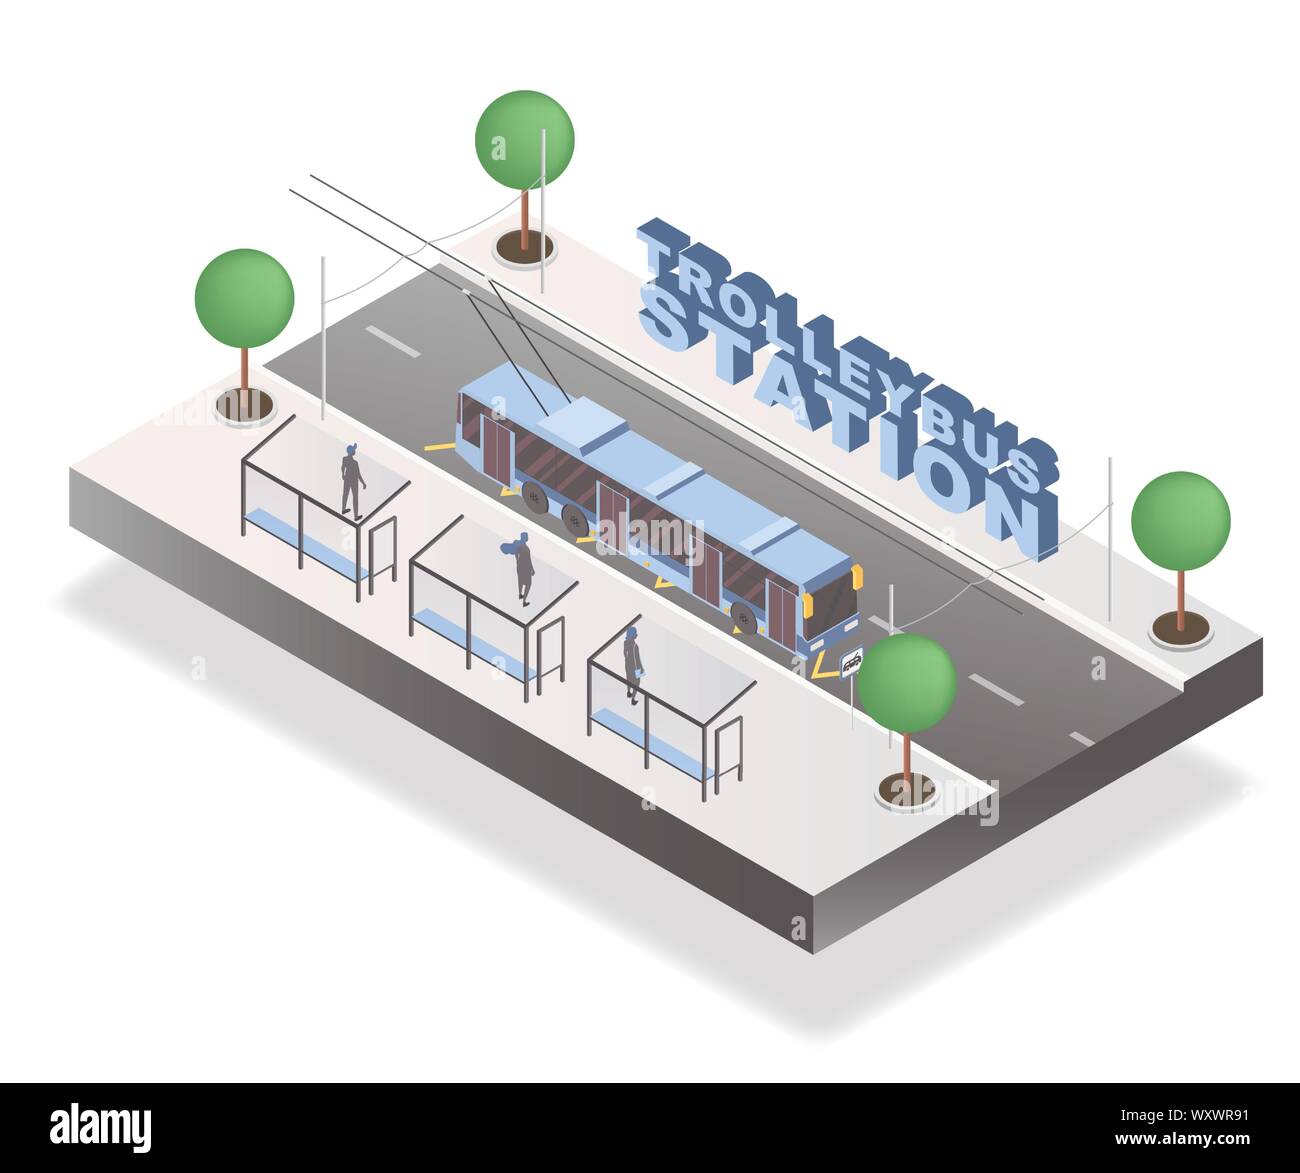 La gare de trolleybus bannière isométrique modèle. Les passagers sur le trottoir attendant bus 3D de vecteur illustration avec lettrage. Élément d'architecture urbaine, transport public, ville de l'affiche de voyage Illustration de Vecteur